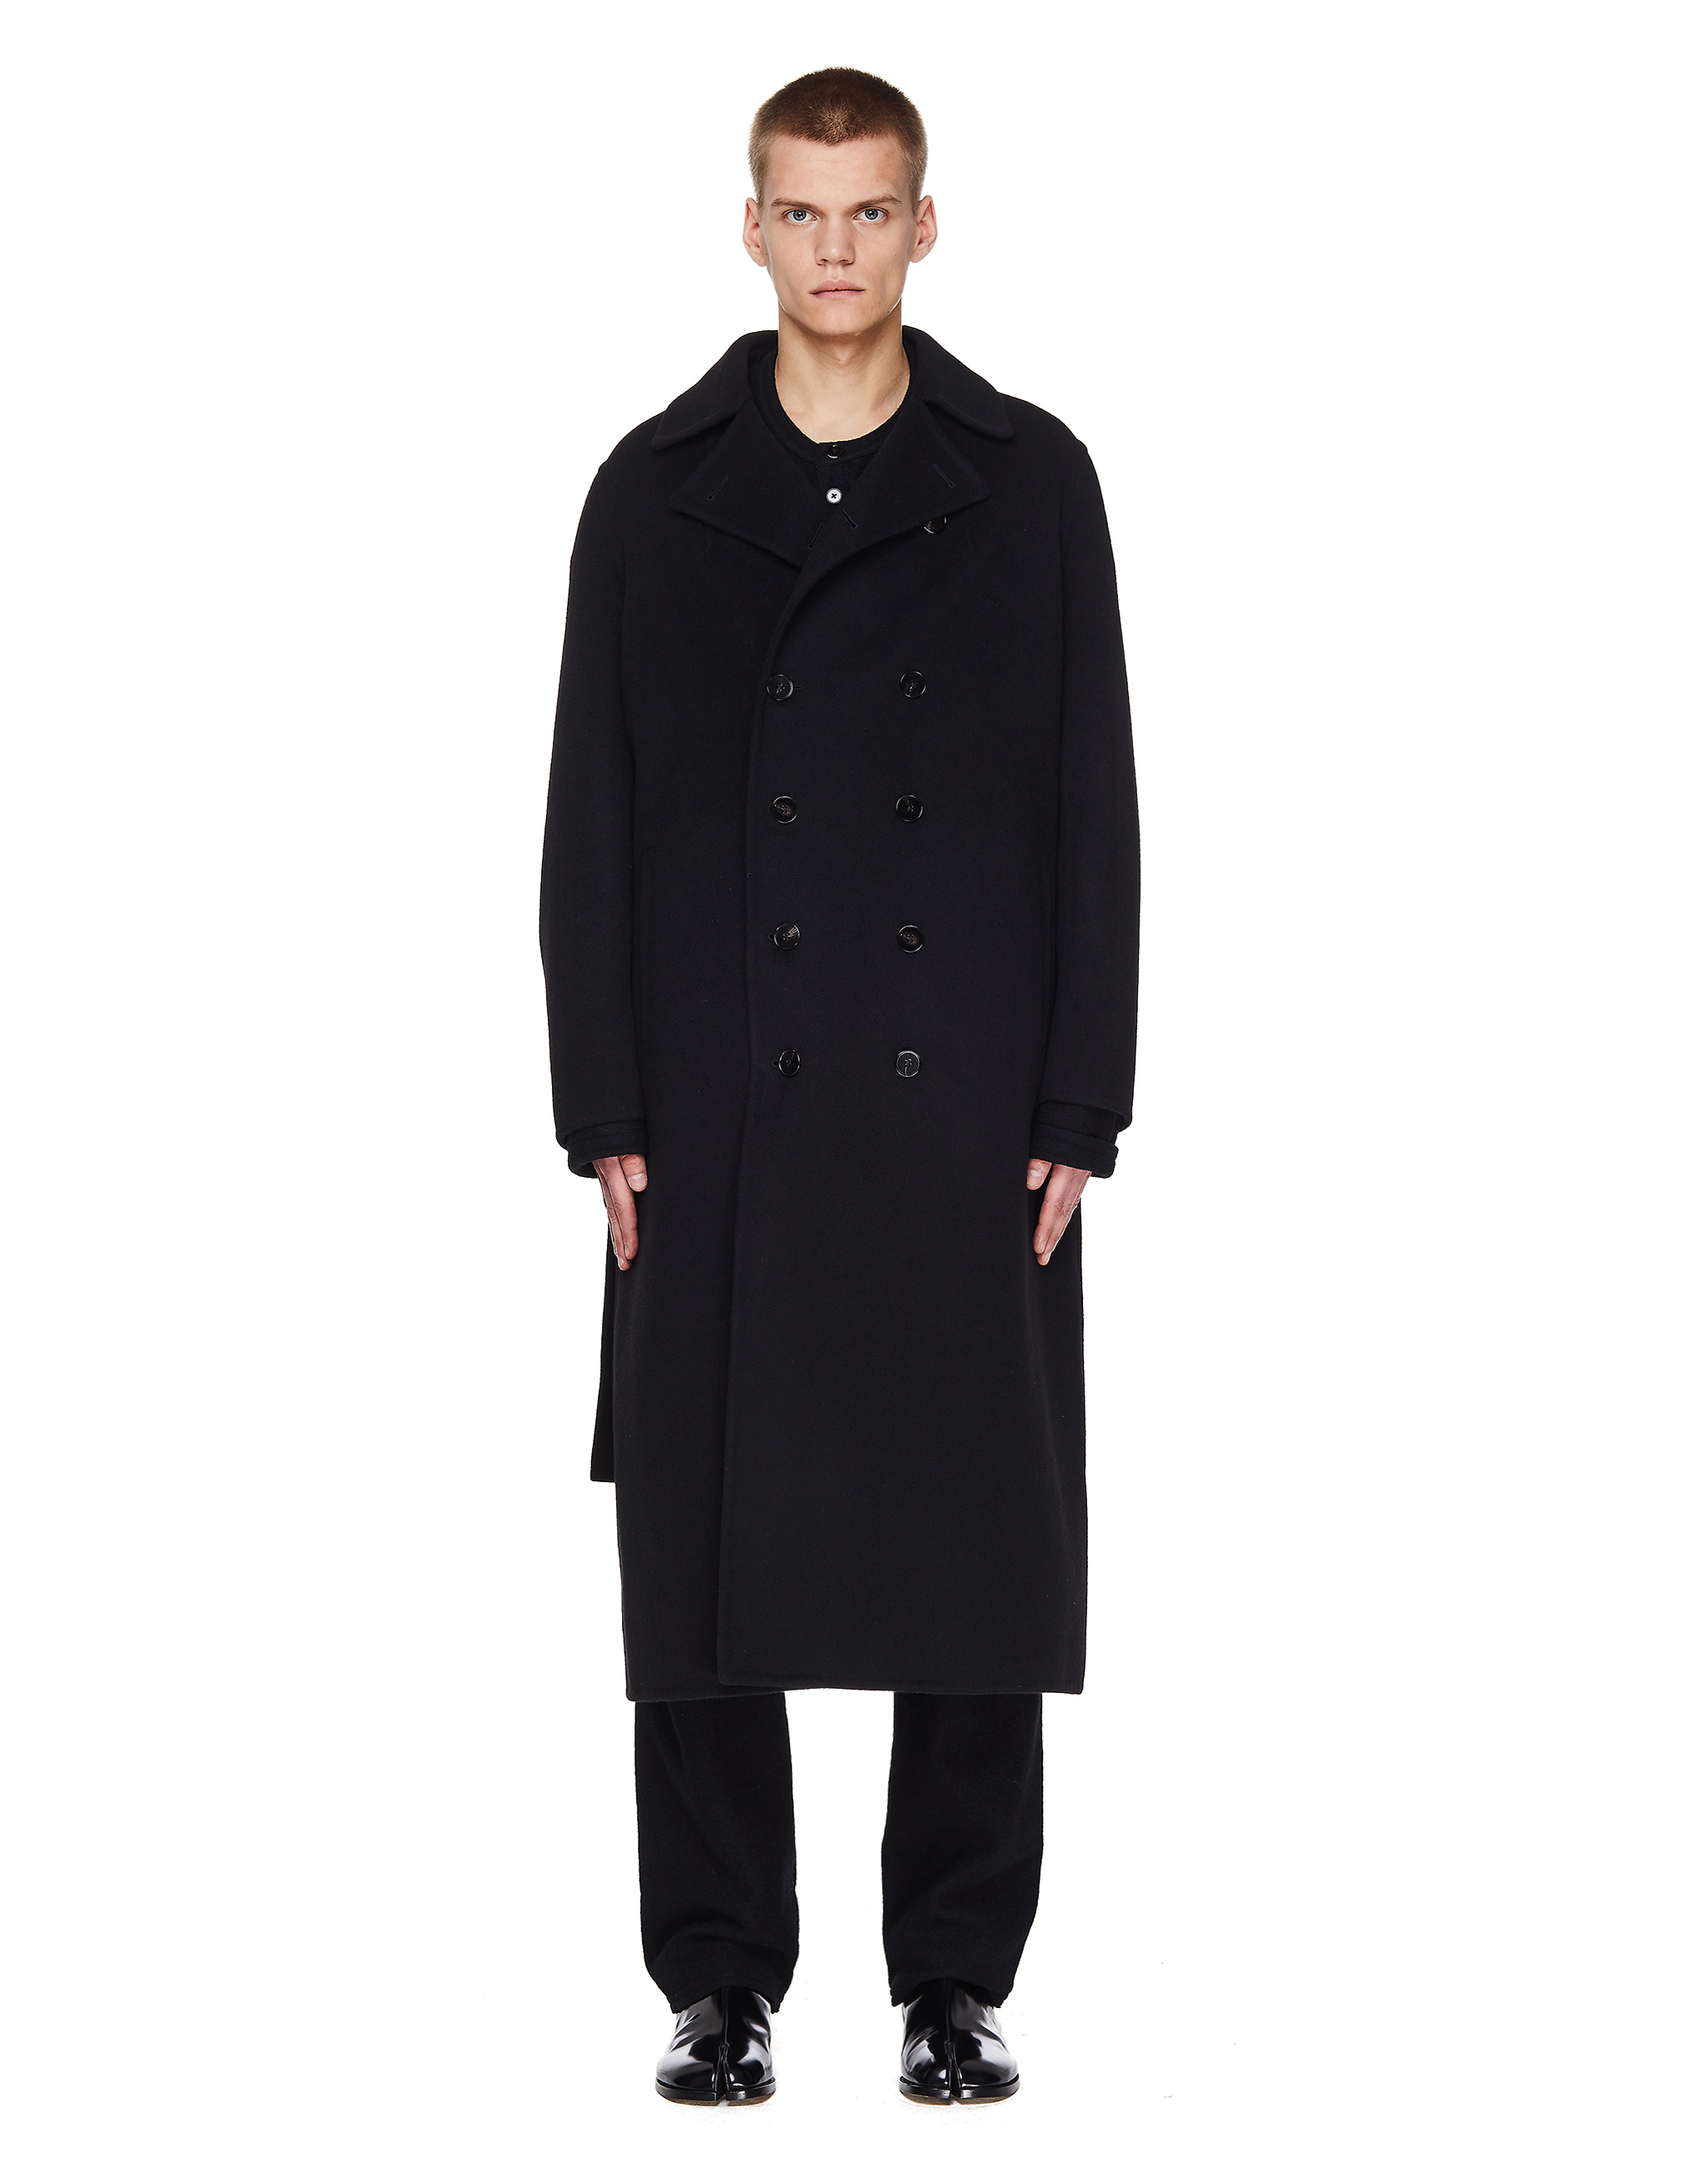 Черное кашемировое пальто с поясом - Jil Sander JSMR120103/MR100103/001